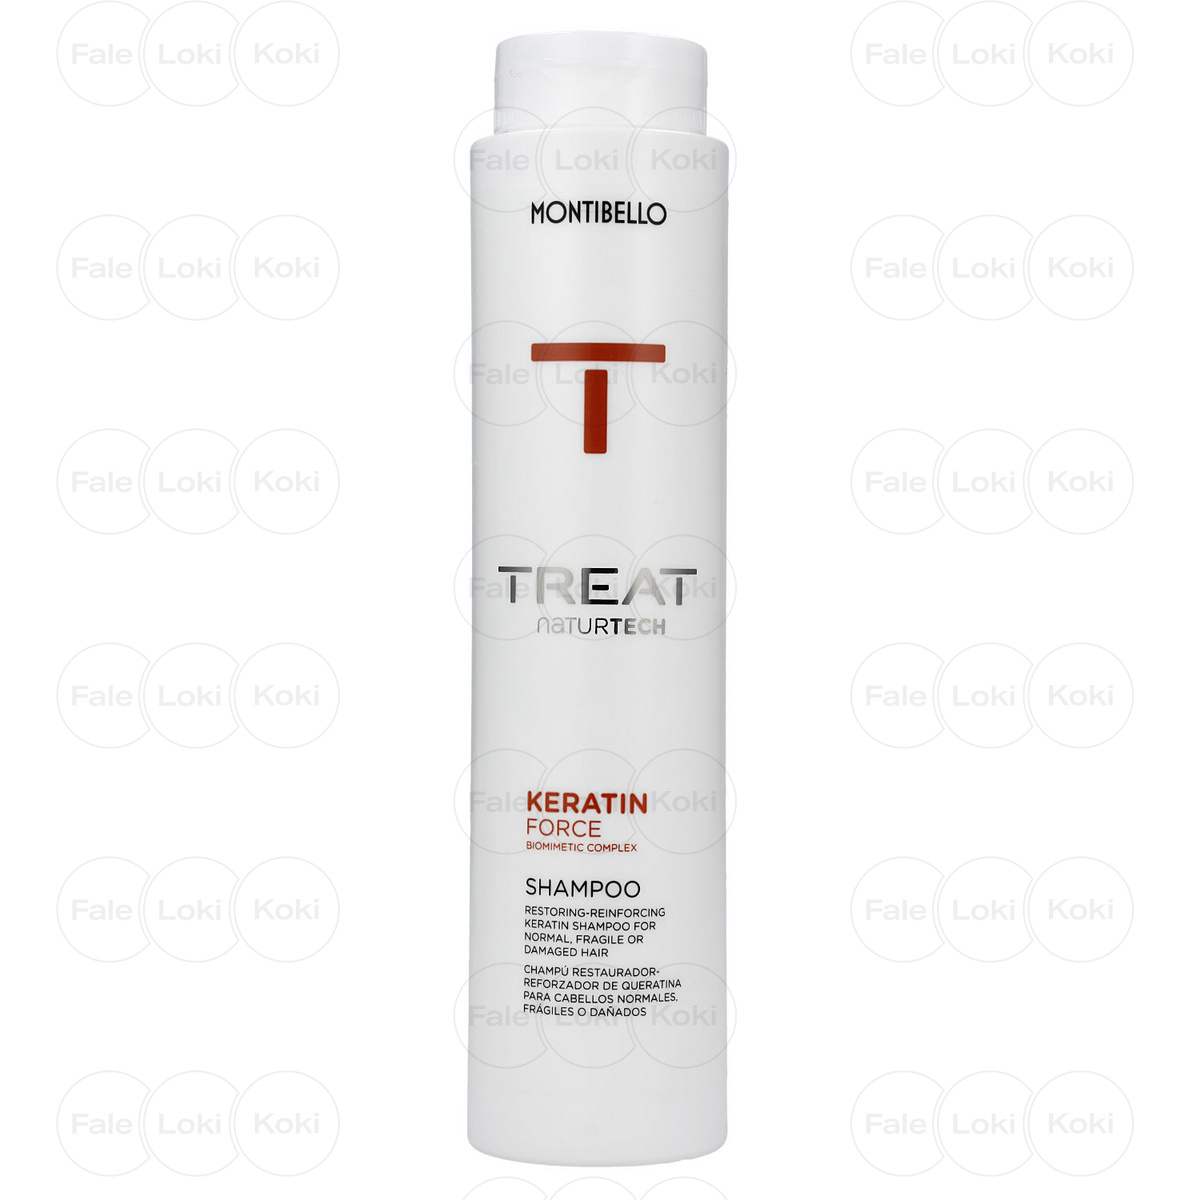 MONTIBELLO TREAT NATURTECH szampon do włosów łamliwych Keratin Force 300 ml